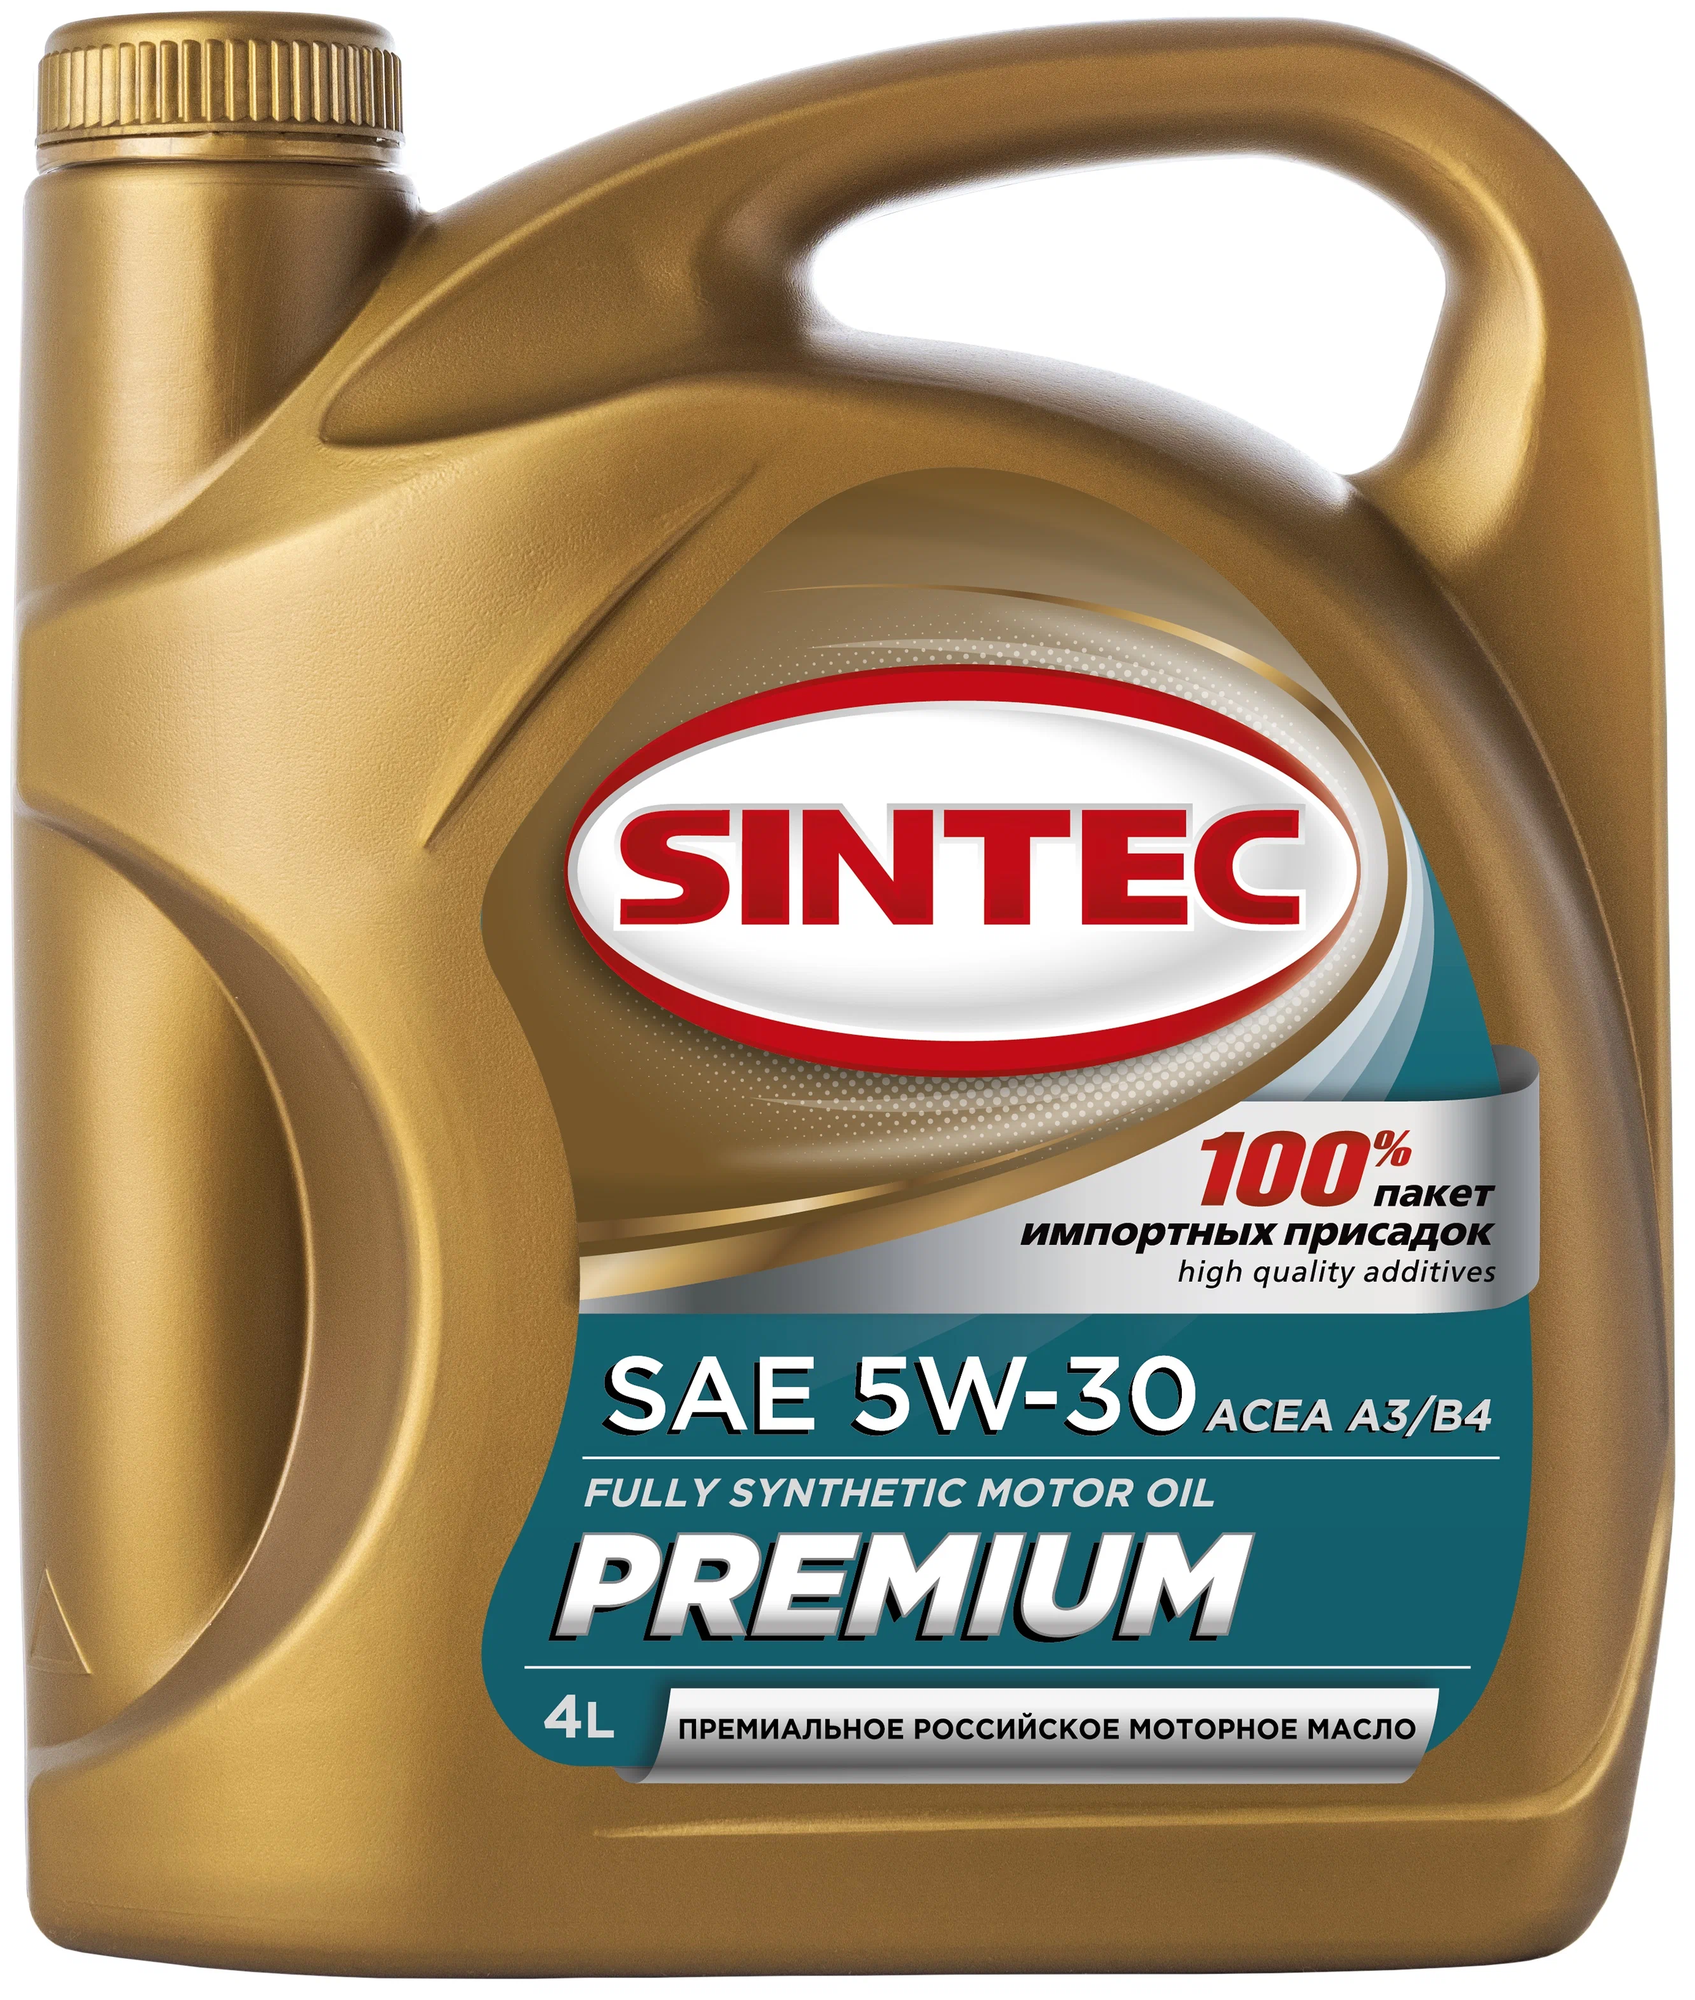 Синтетическое моторное масло SINTEC Premium SAE 5W-30 ACEA A3/B4